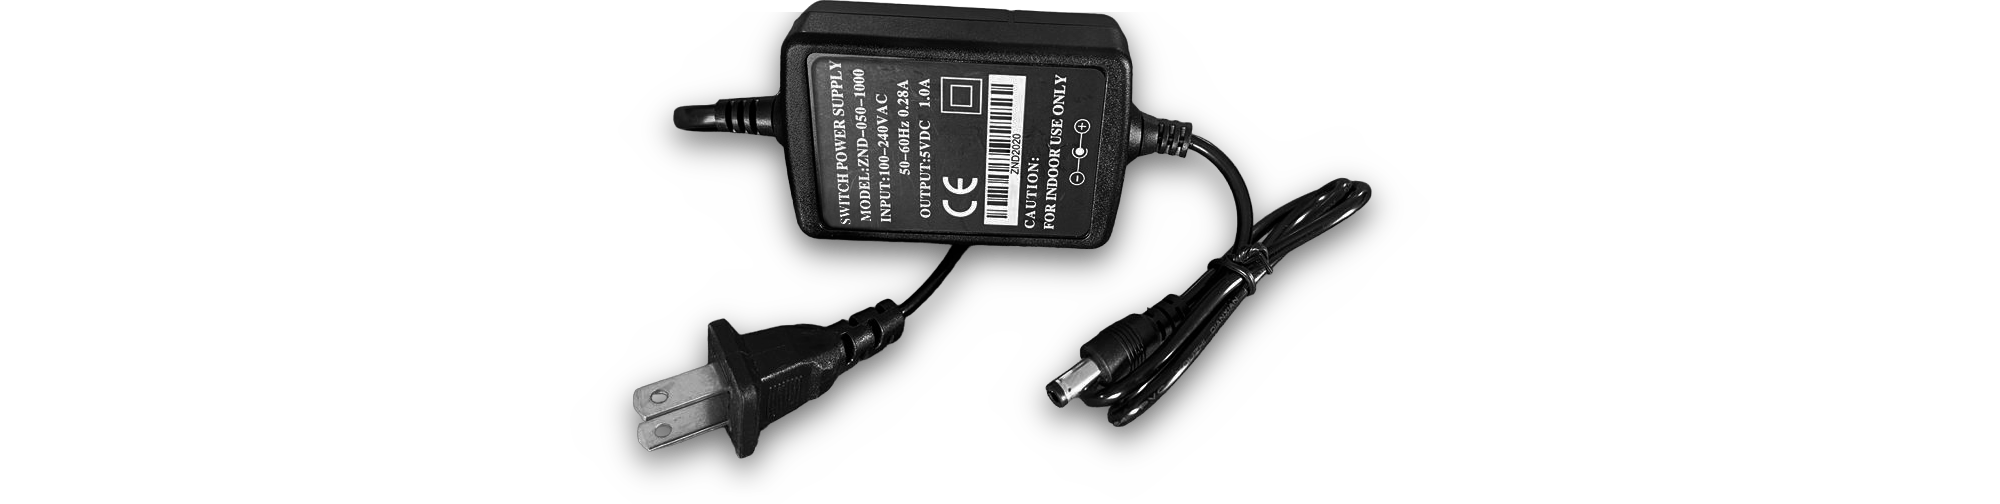 Compacto HDMI Modulador del Codificador con Licencia de Dolby AC/3 Audio  Codec